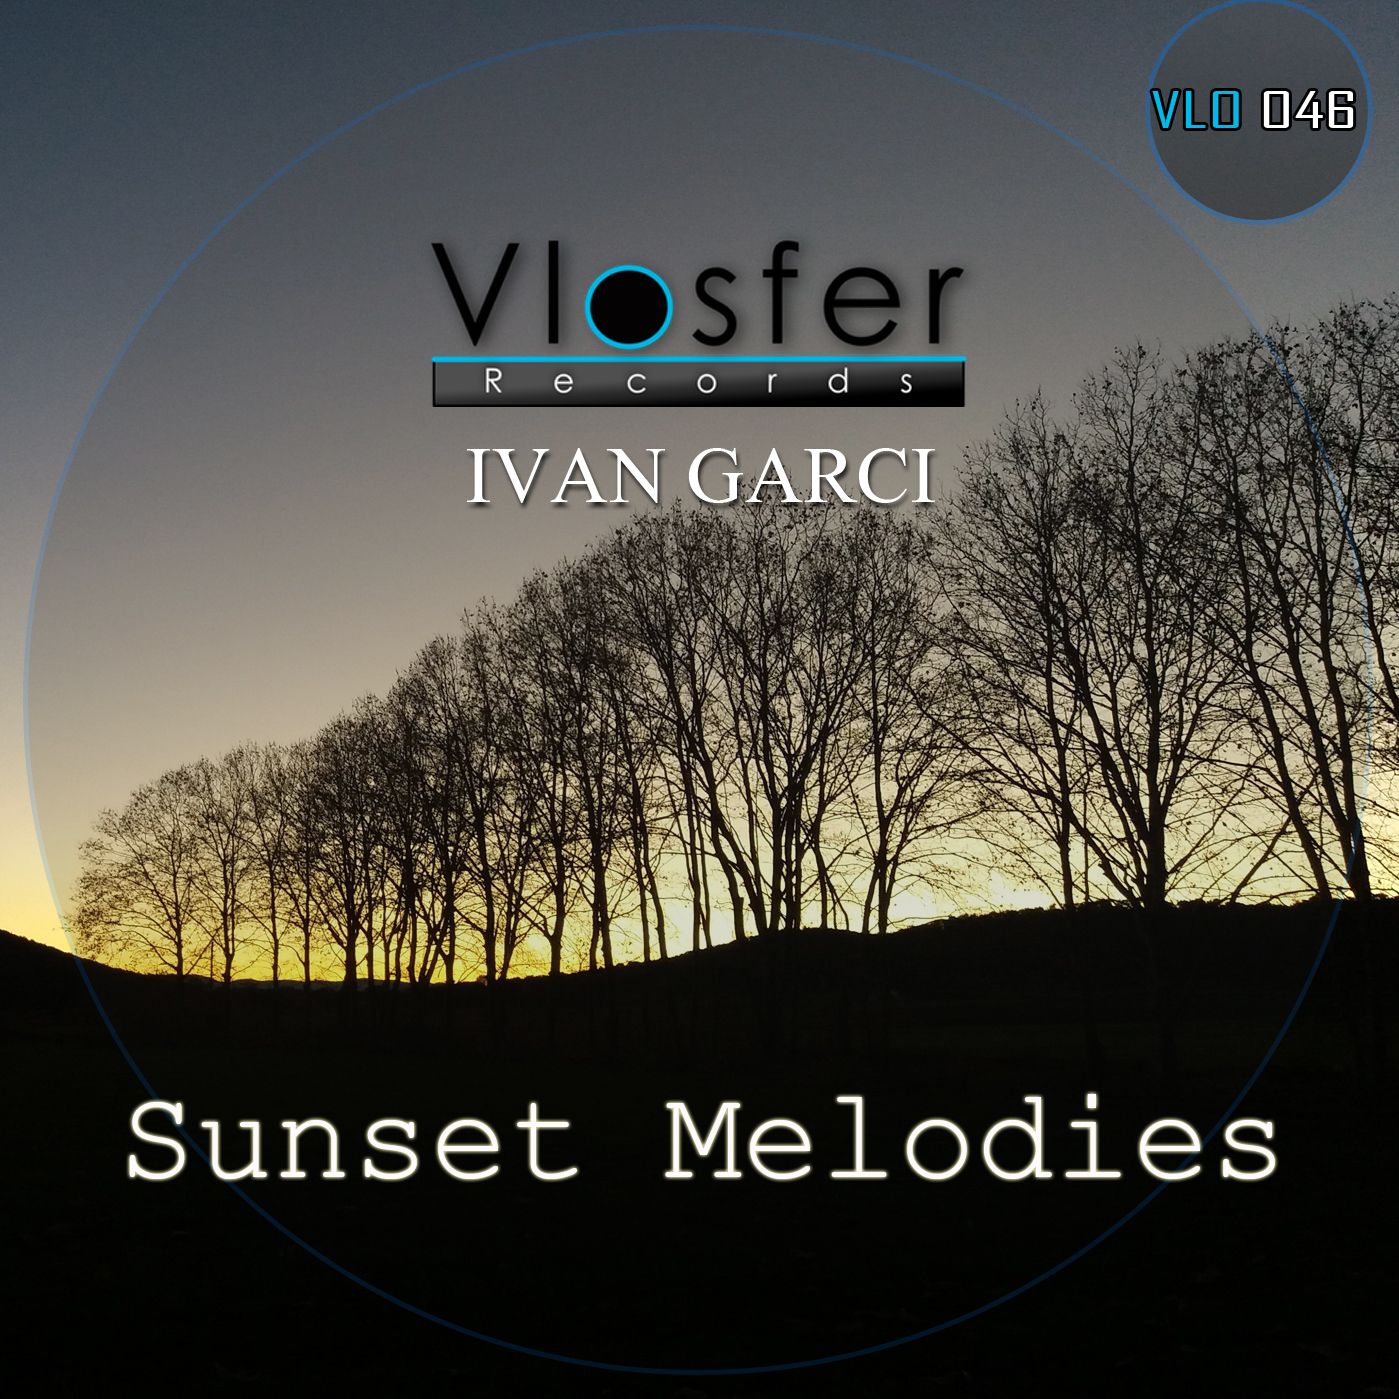 Eroflueden Clear - Ivan Garci (low quality sound) Vlosfer records.